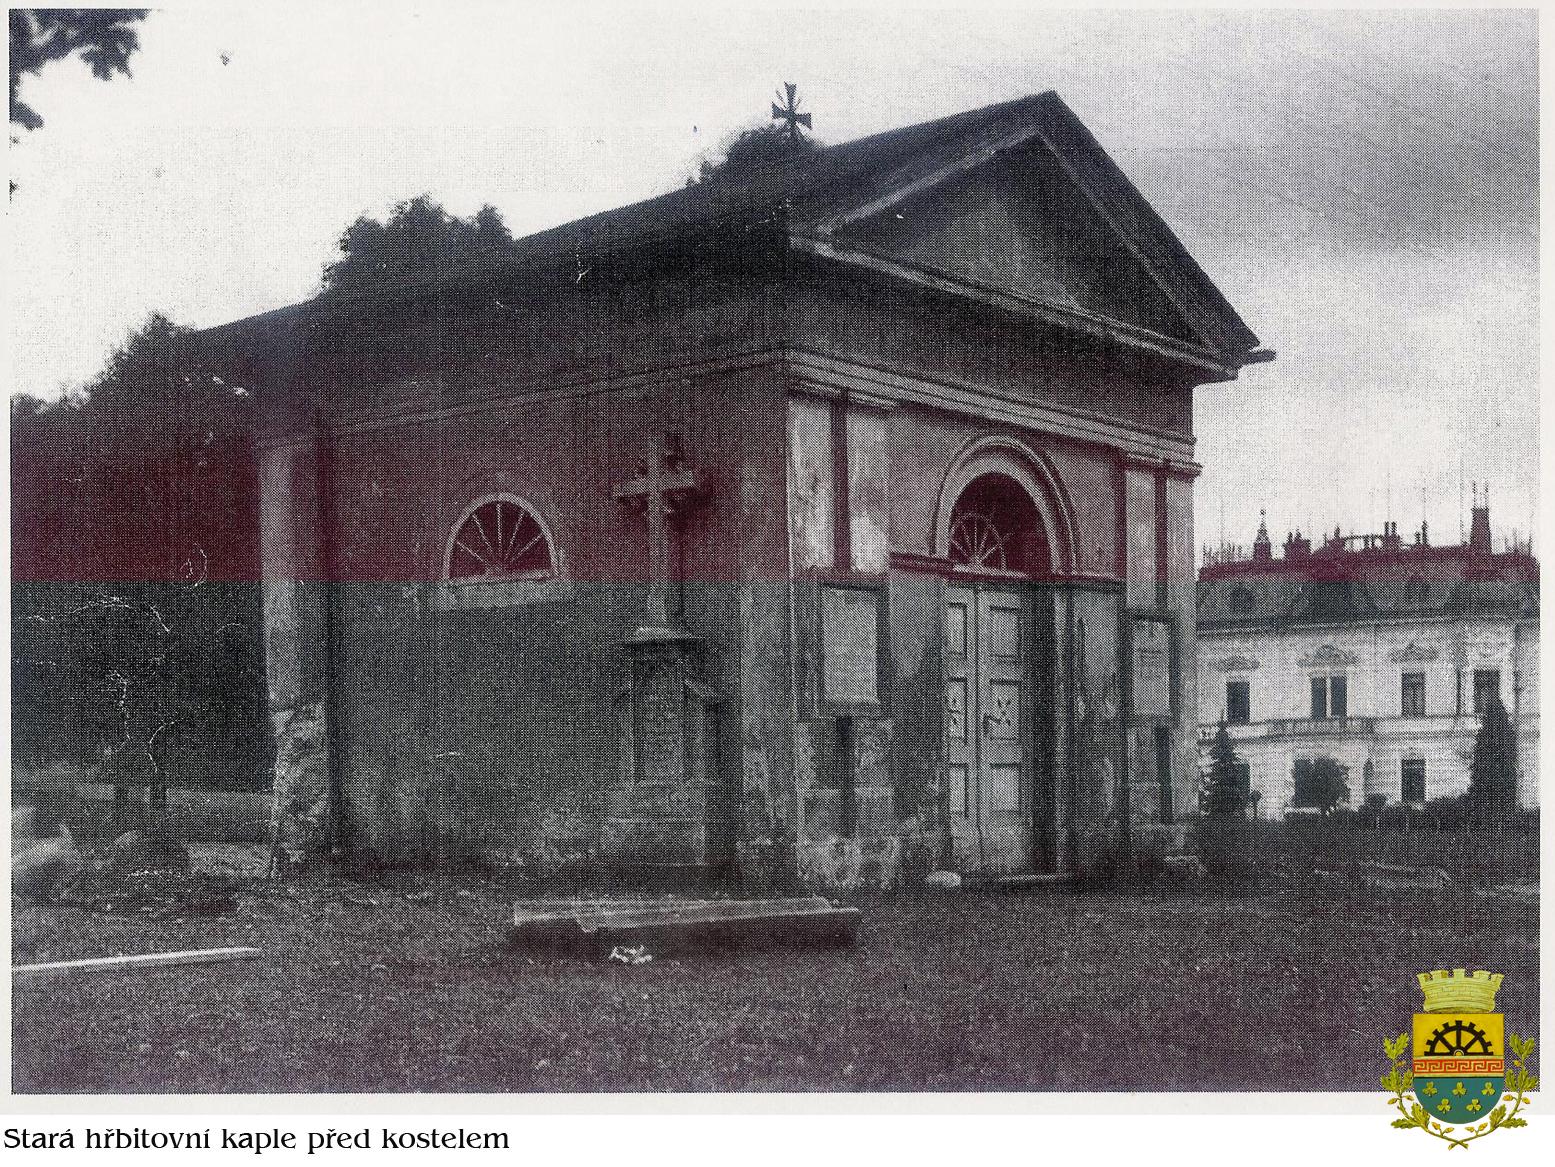 Hřbitovní kaple bývala užívána jako márnice a kostnice. Byla postavena kolem roku 1800. Zbourána v roce 1923.